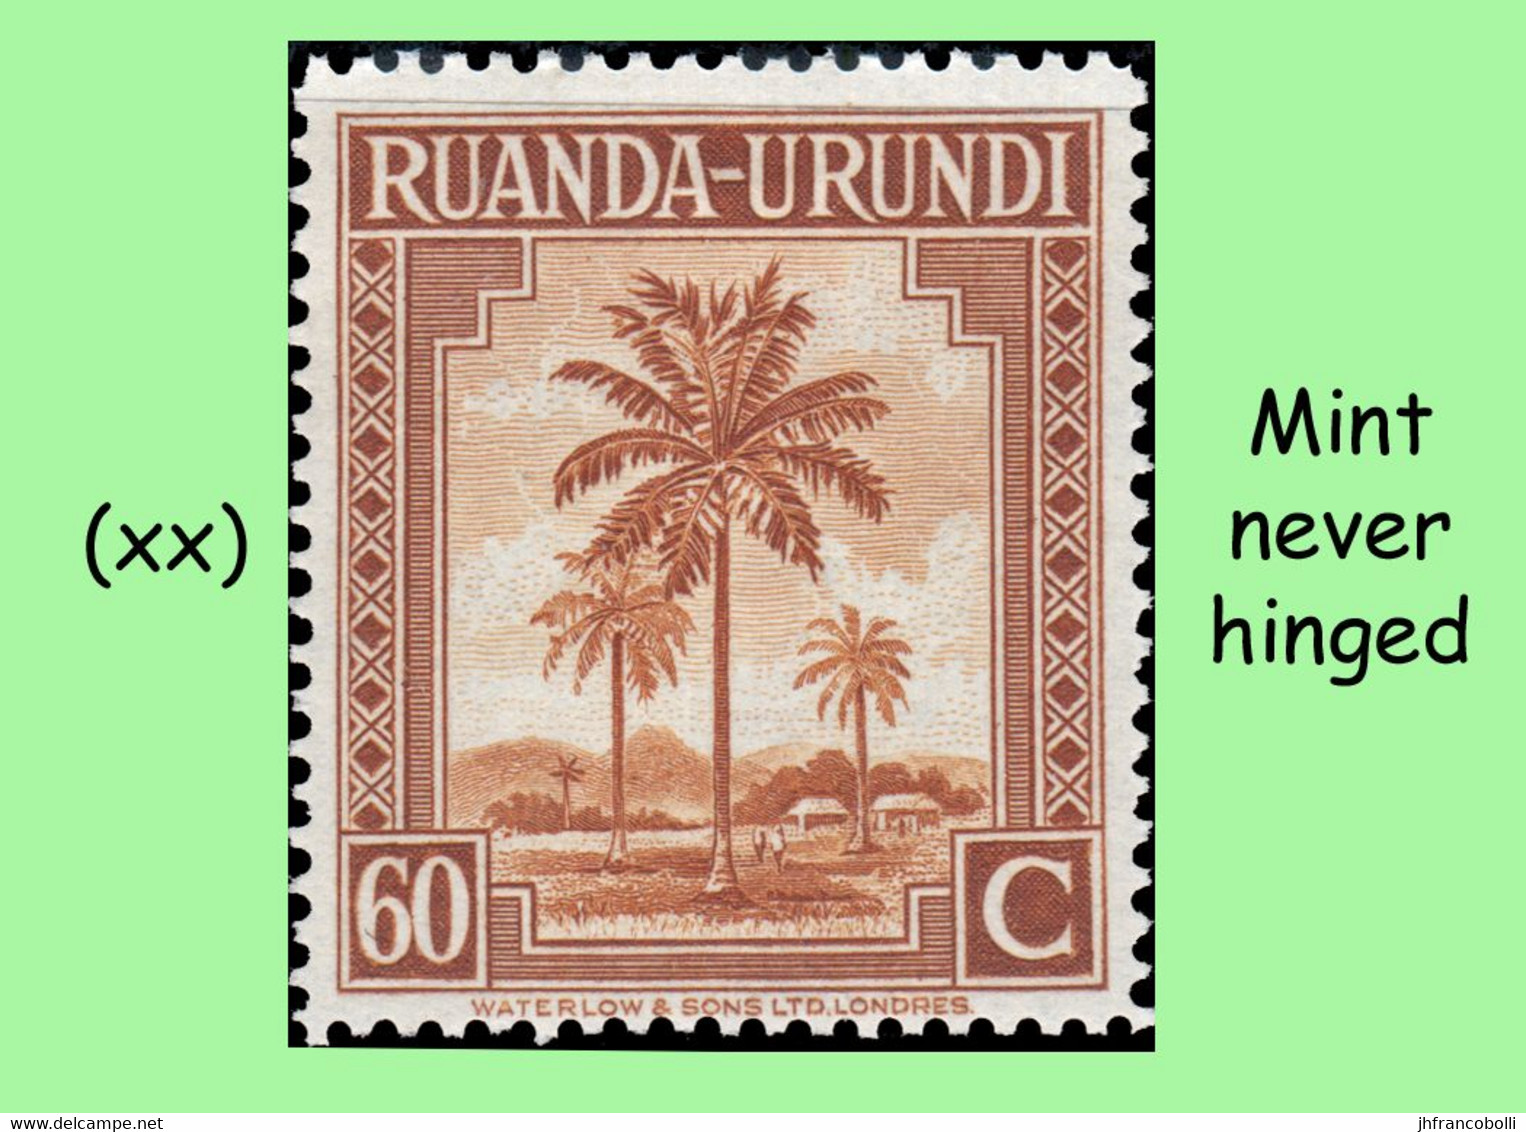 1942 ** RUANDA-URUNDI RU 126/146 MNH PALM SET SELECTION ( x 21 stamps )